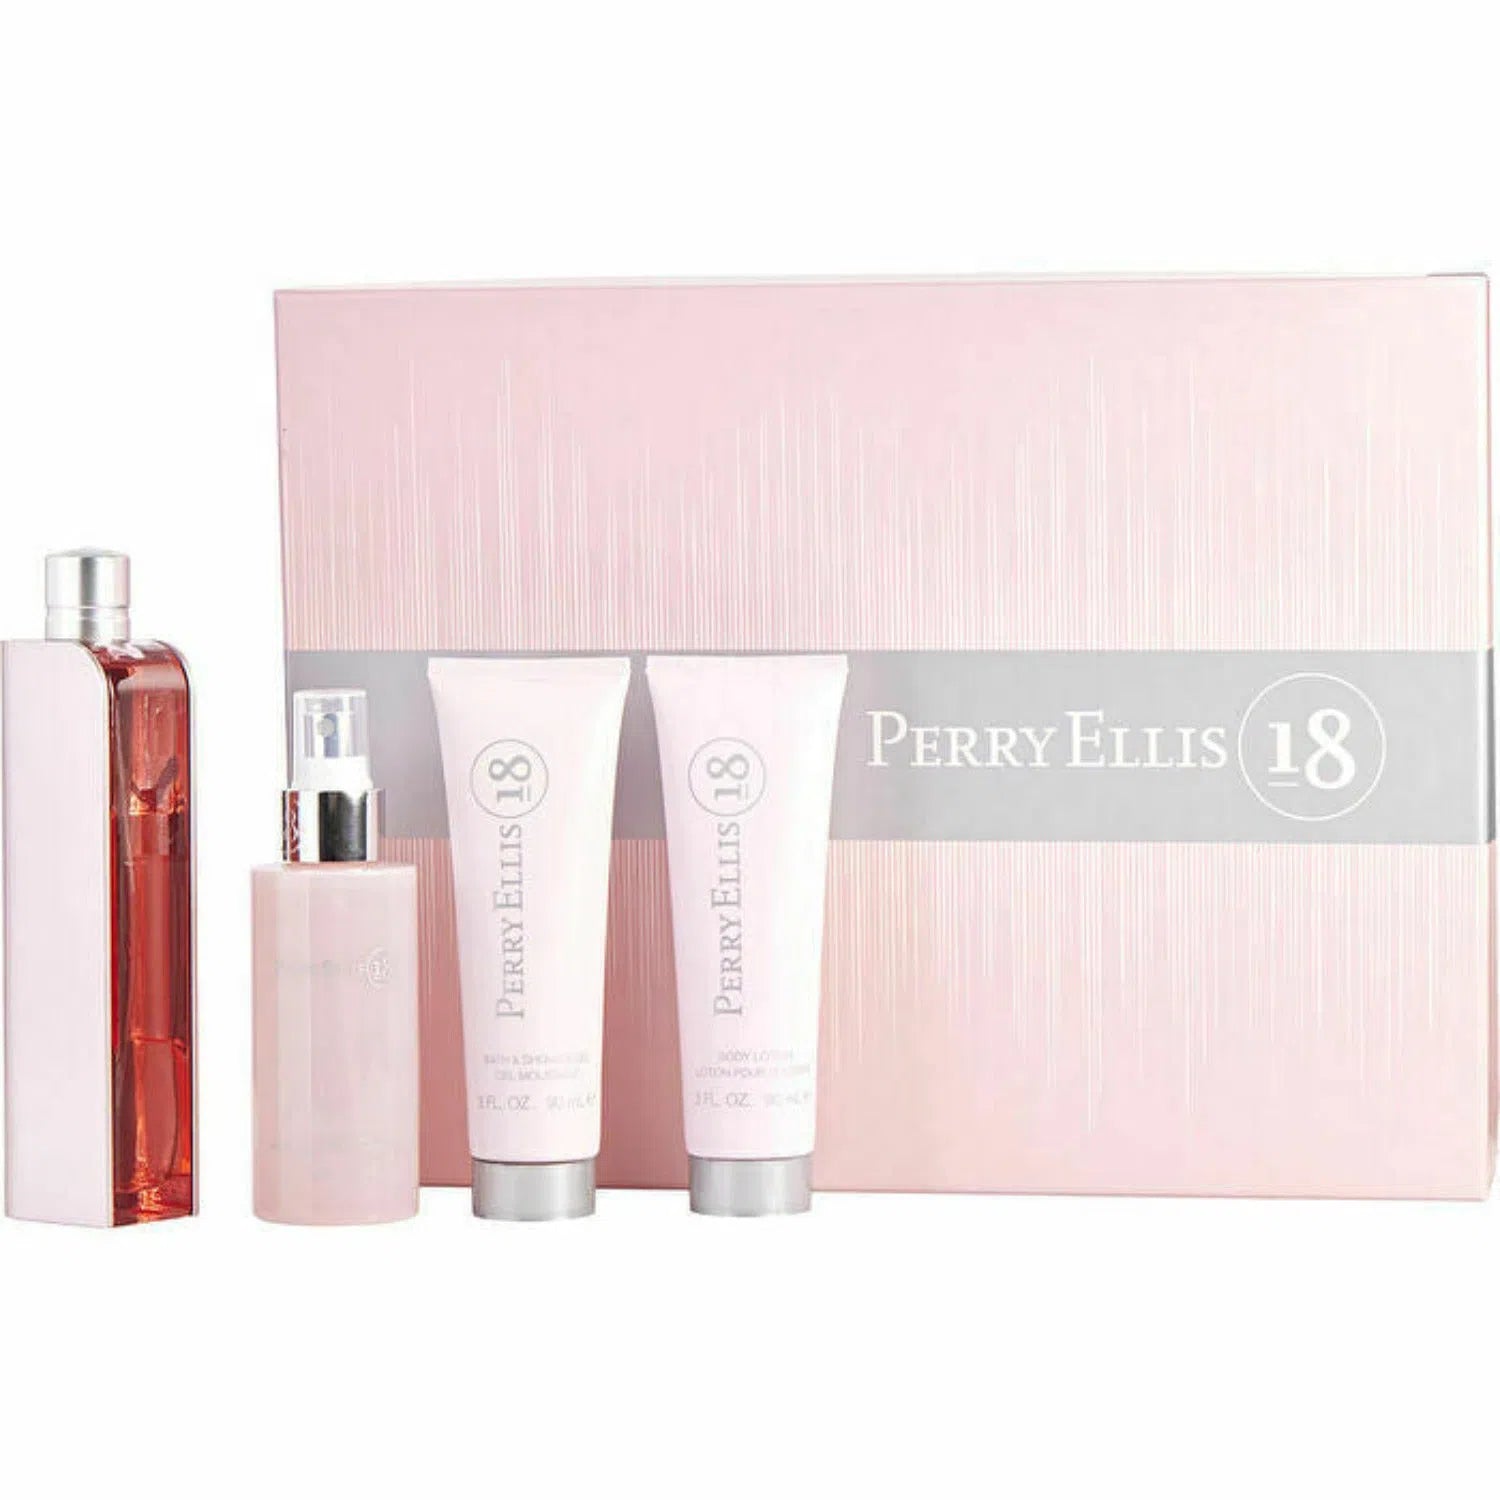 Estuche Perry Ellis 18 EDP (W) / 4 Pc SP 100 ml; BM 120 ml; BS 90 ml; BL 90 ml - 844061014428- Prive Perfumes Honduras